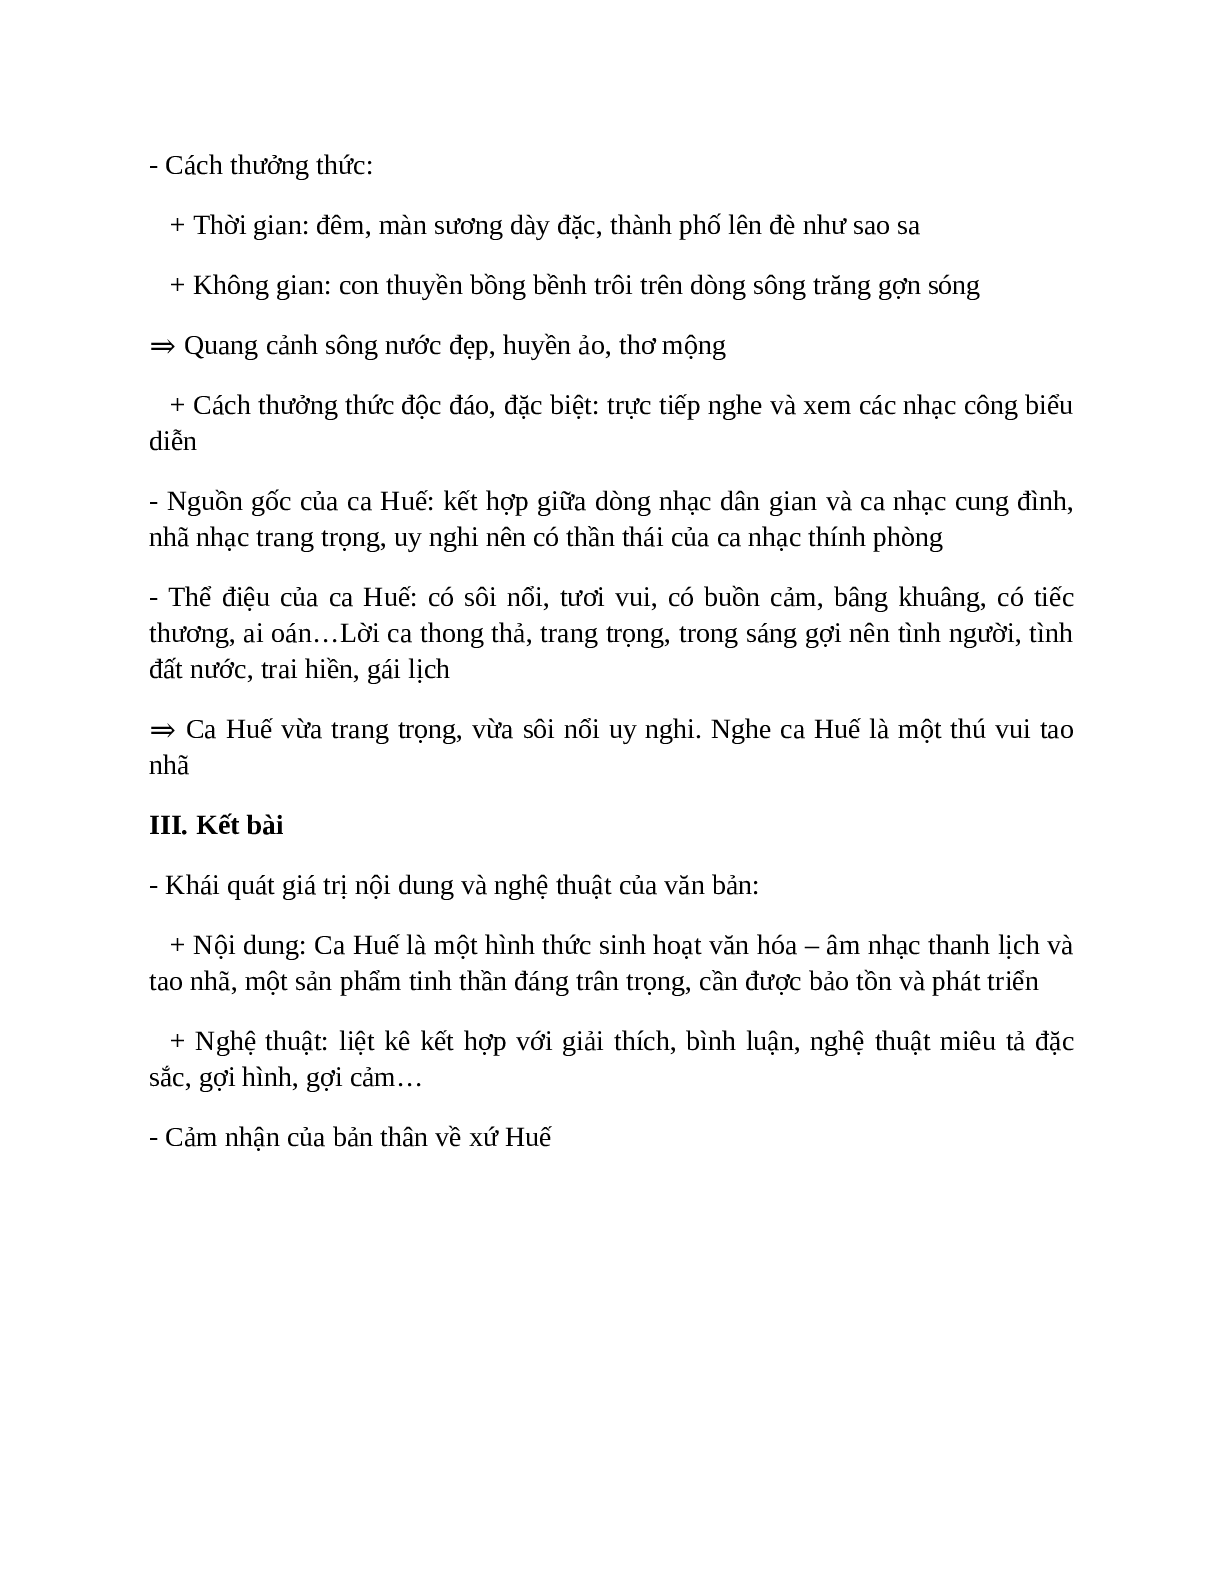 Ca Huế trên sông Hương – nội dung, dàn ý phân tích, bố cục, tóm tắt (trang 3)